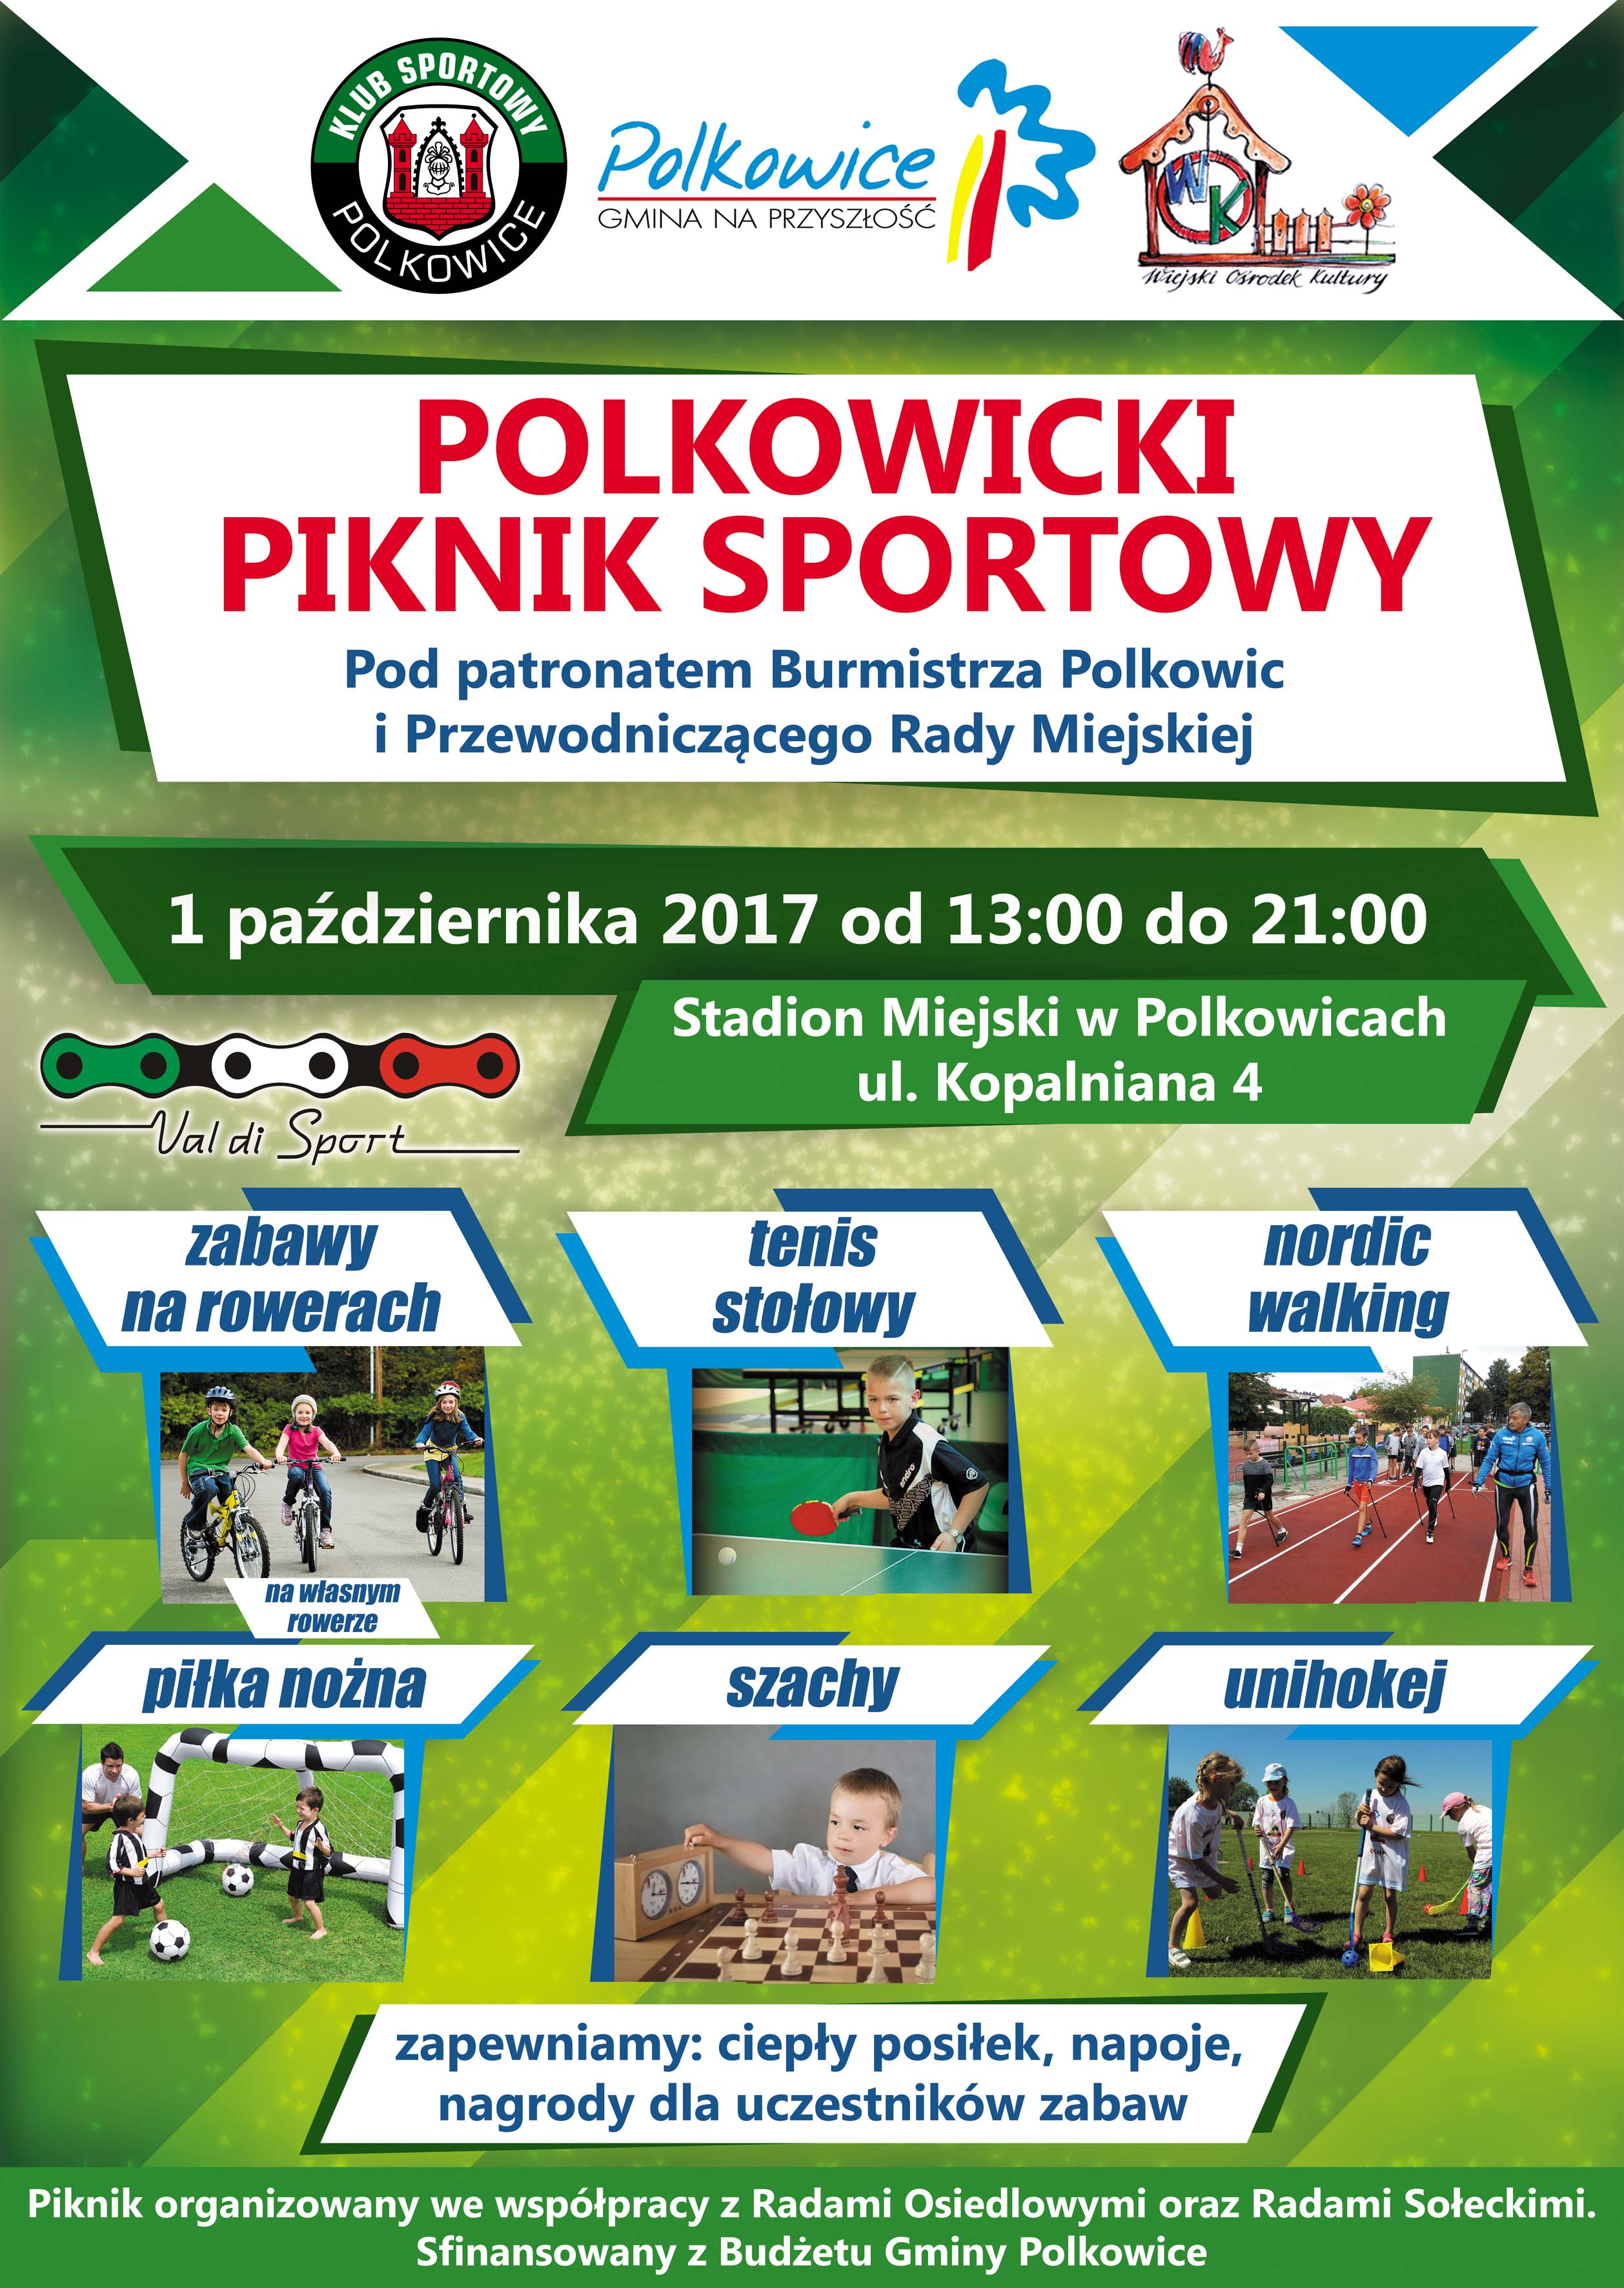 polkowicki-piknik-sportowy-regionfan-pl